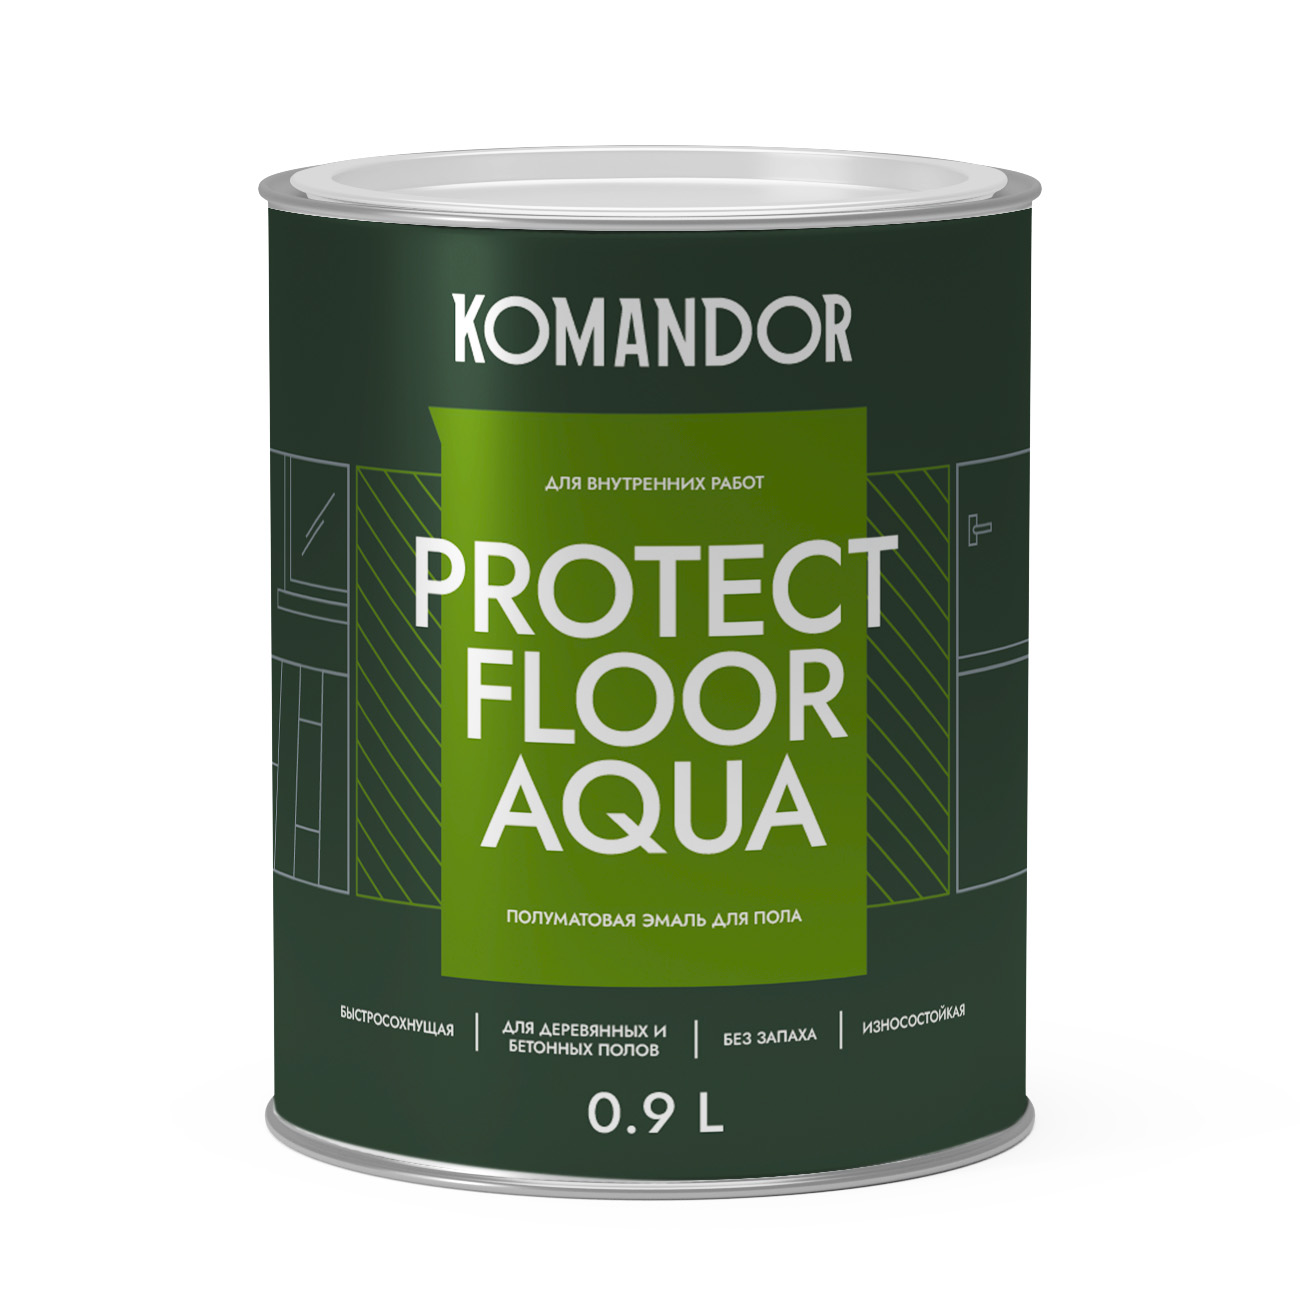 Эмаль для пола и лестниц Komandor Protect Floor Aqua A S1314001001 полуматовая 0,9 л